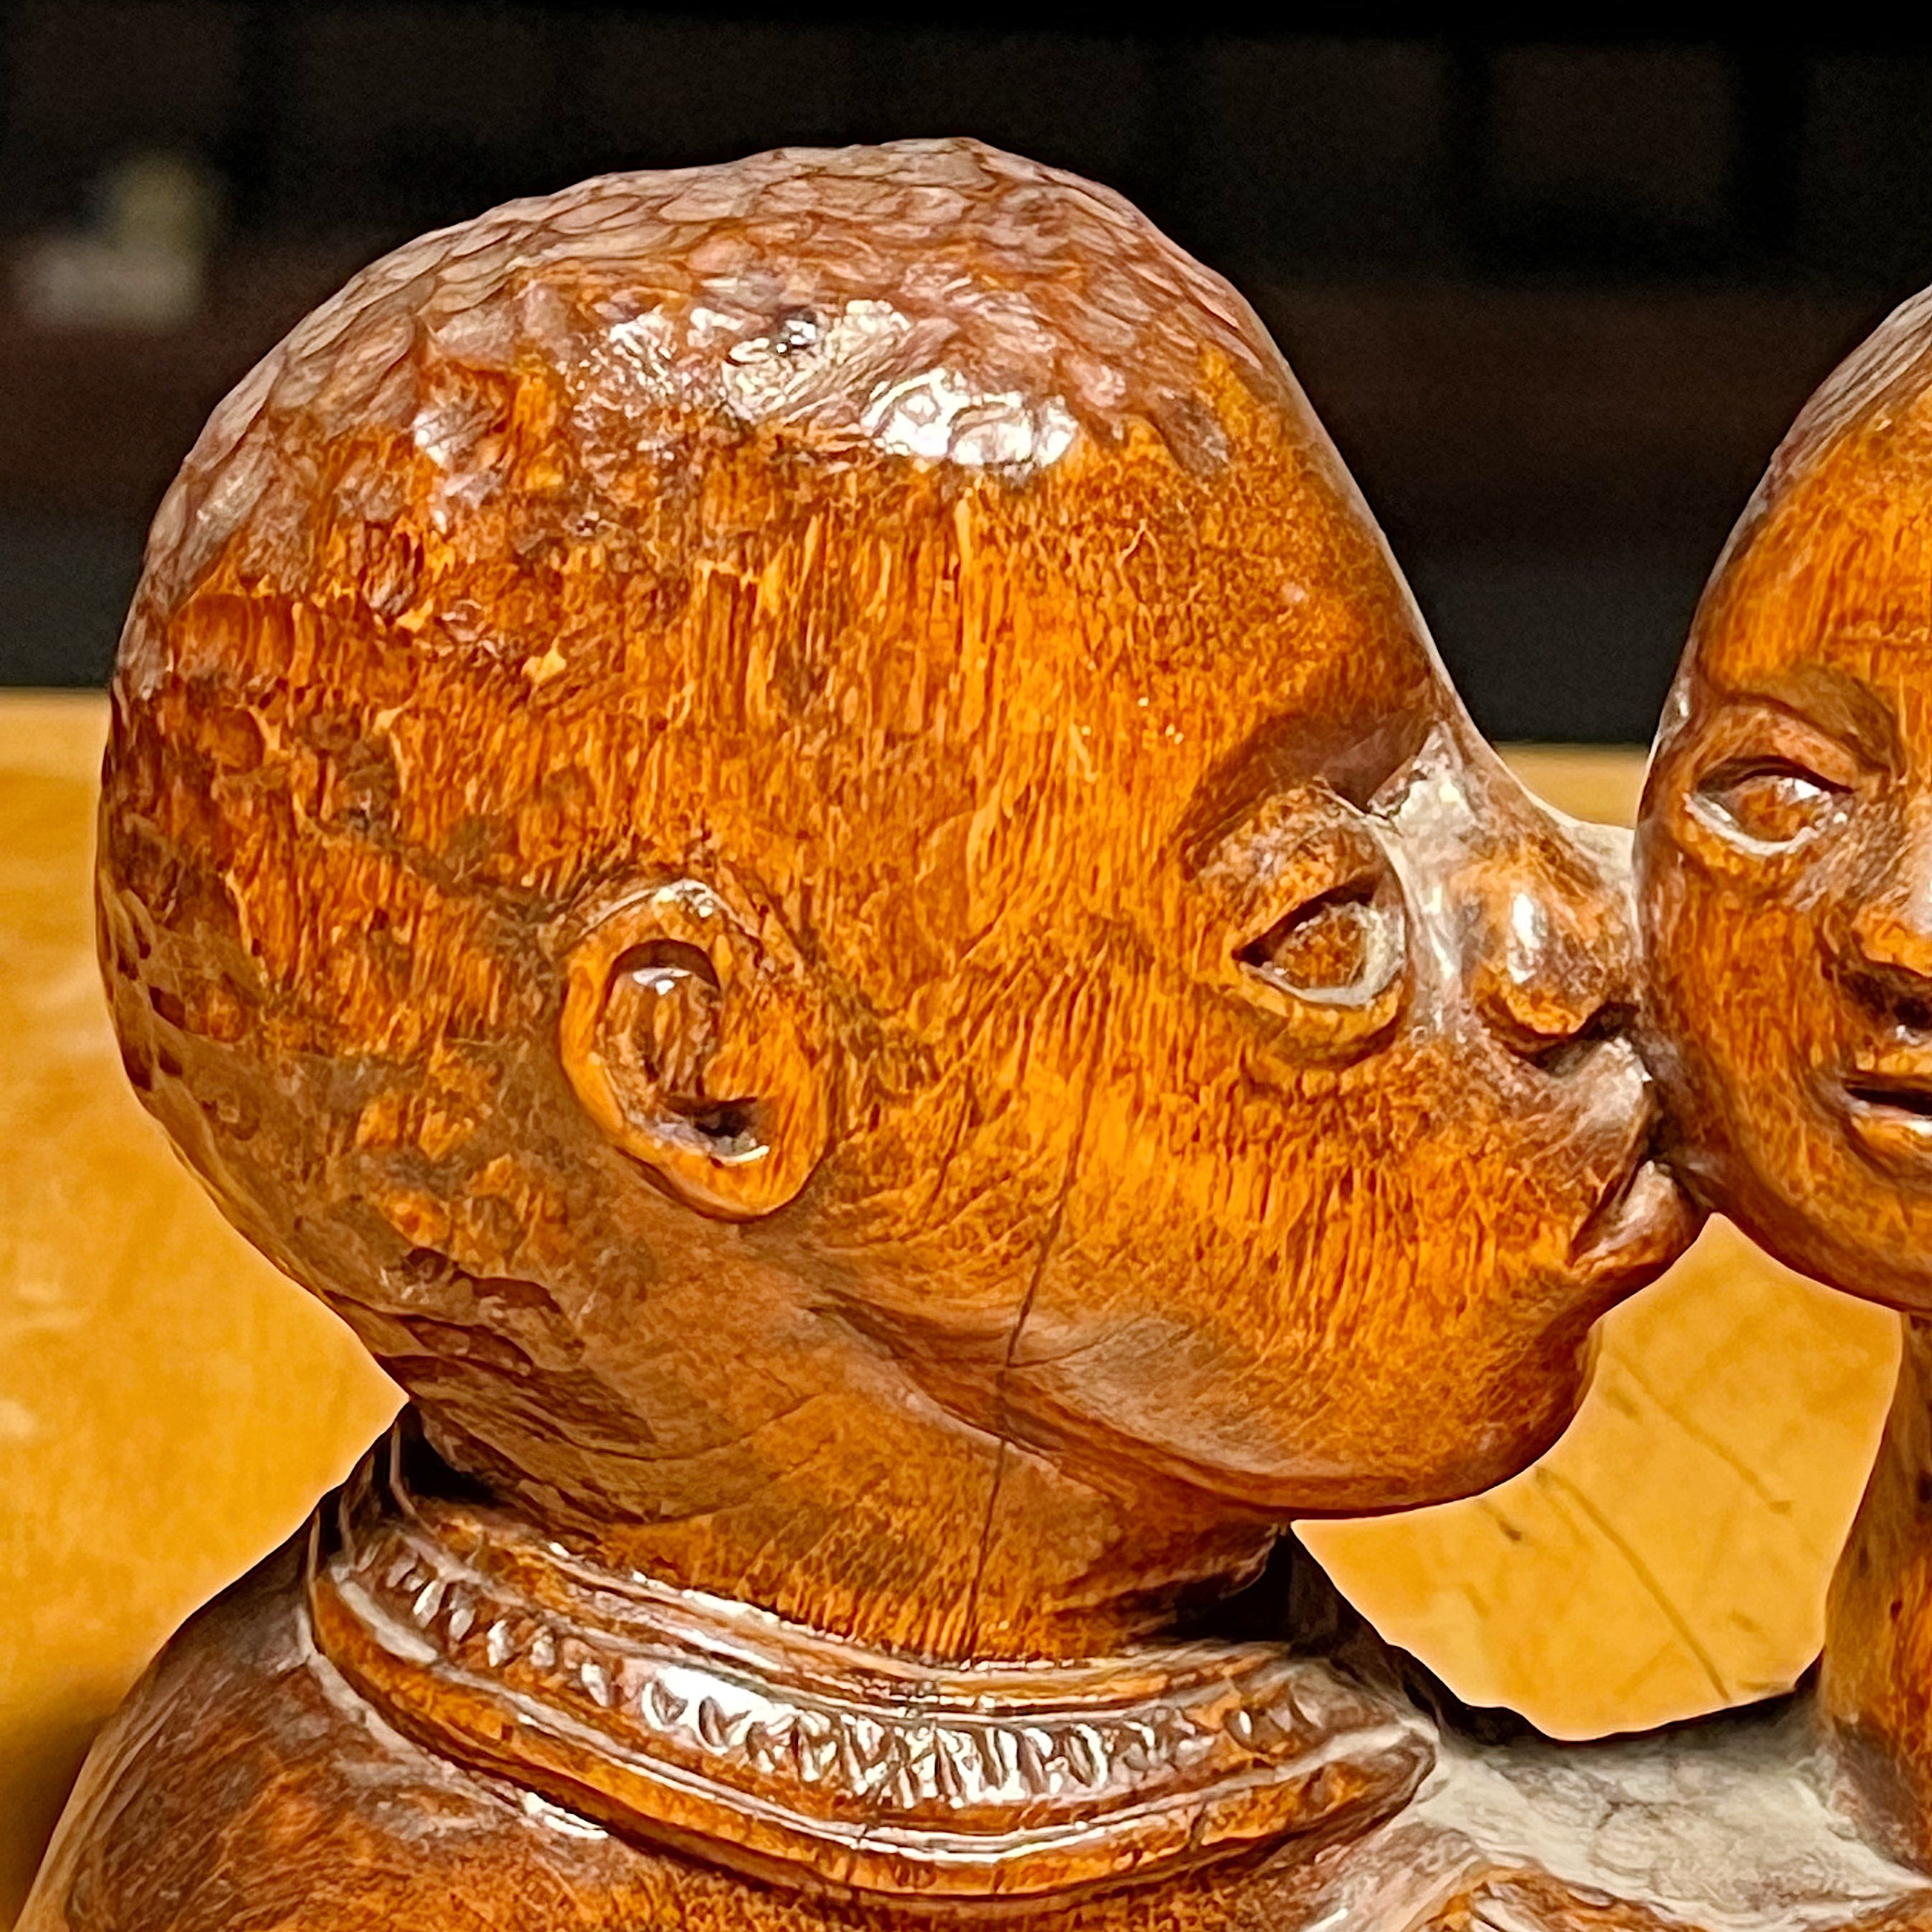 Vintage Folk Art Sculpture of Woman Kissing Baby | Tony Wons